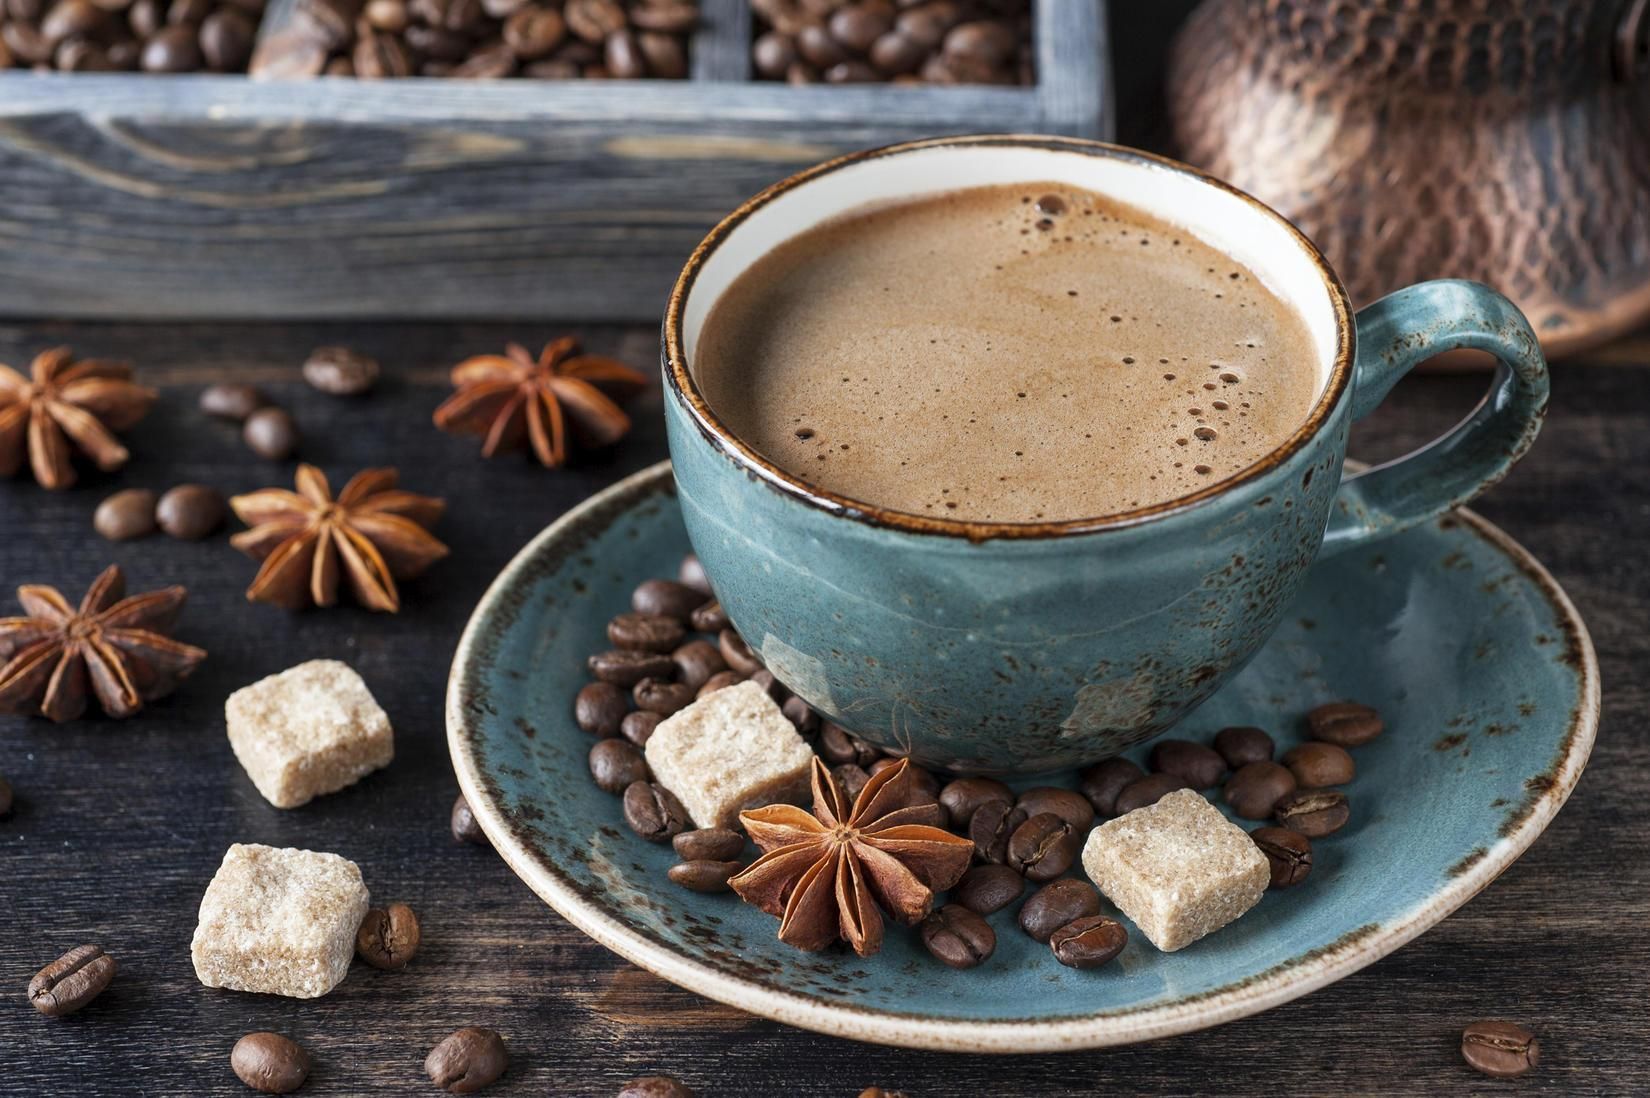 Міжнародний день кави: оригінальні рецепти напою, які вразять своїм смаком